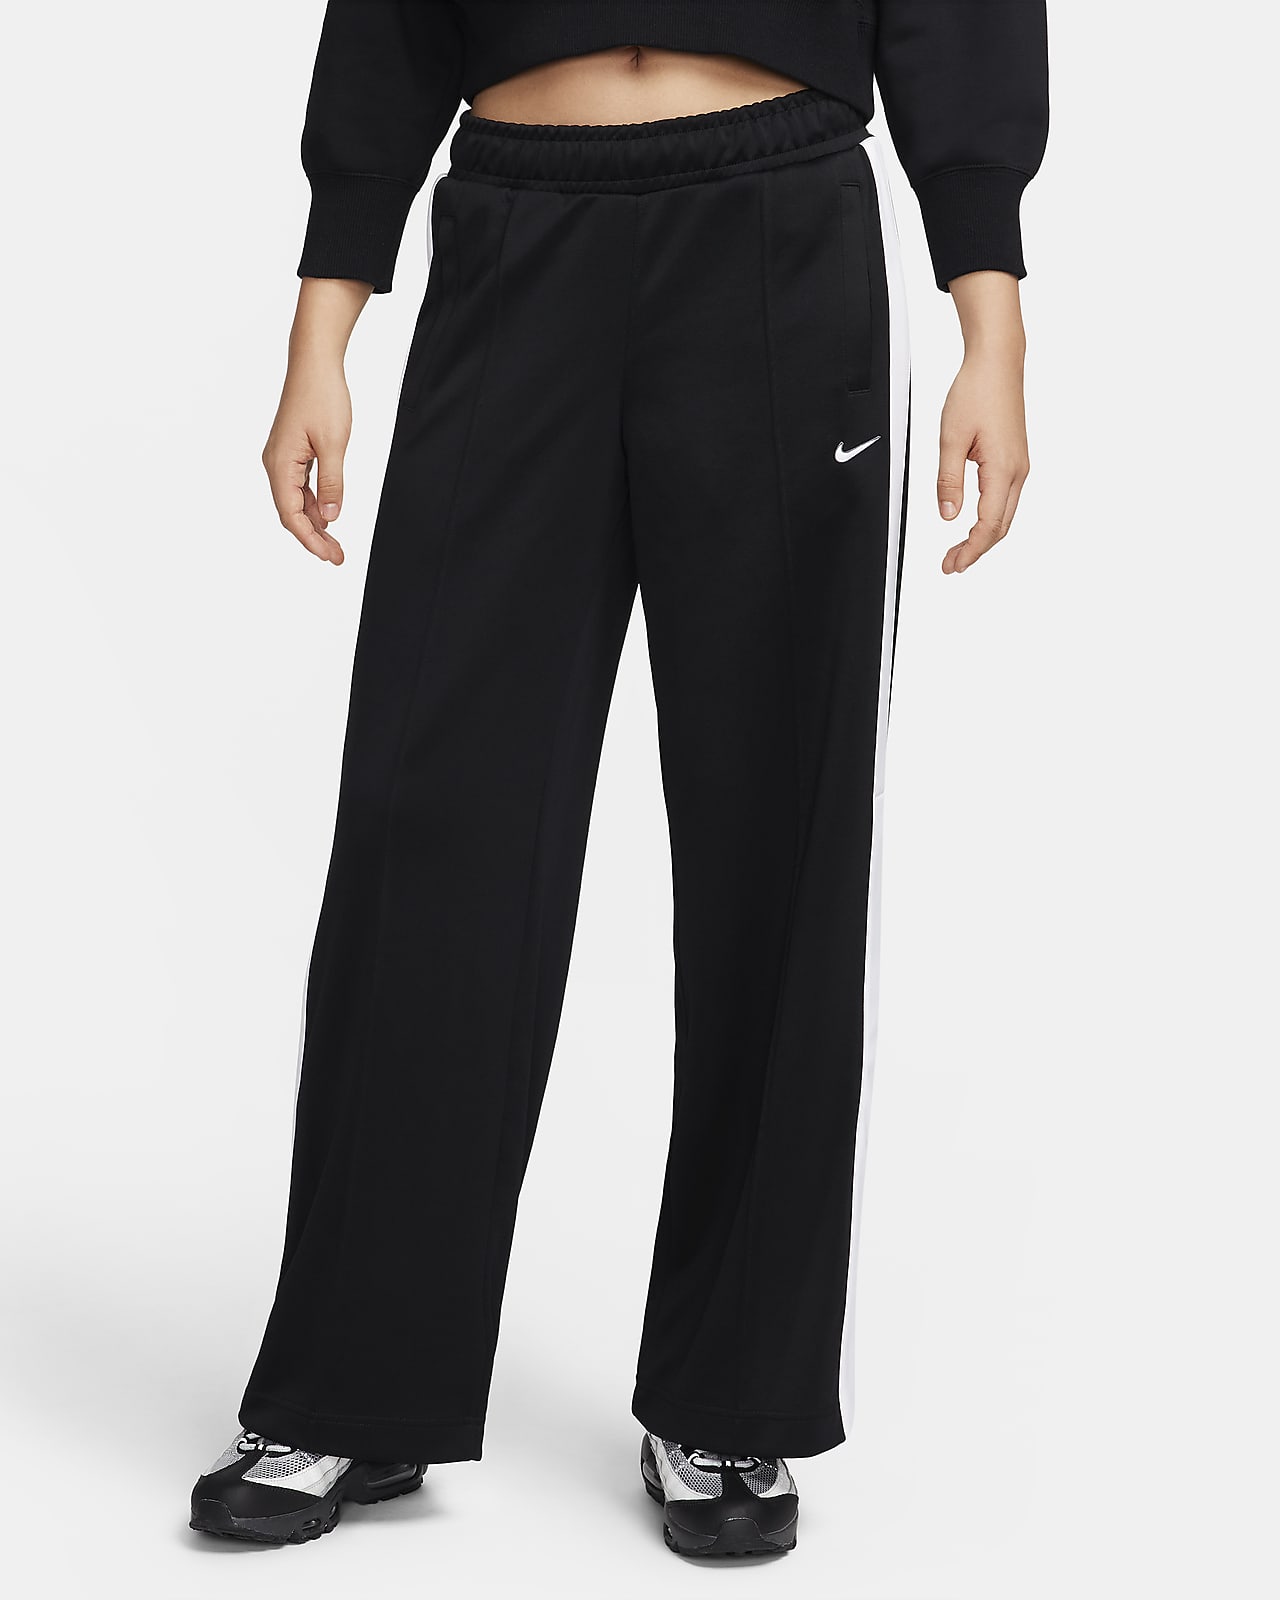 Pantalon Nike Sportswear pour Femme